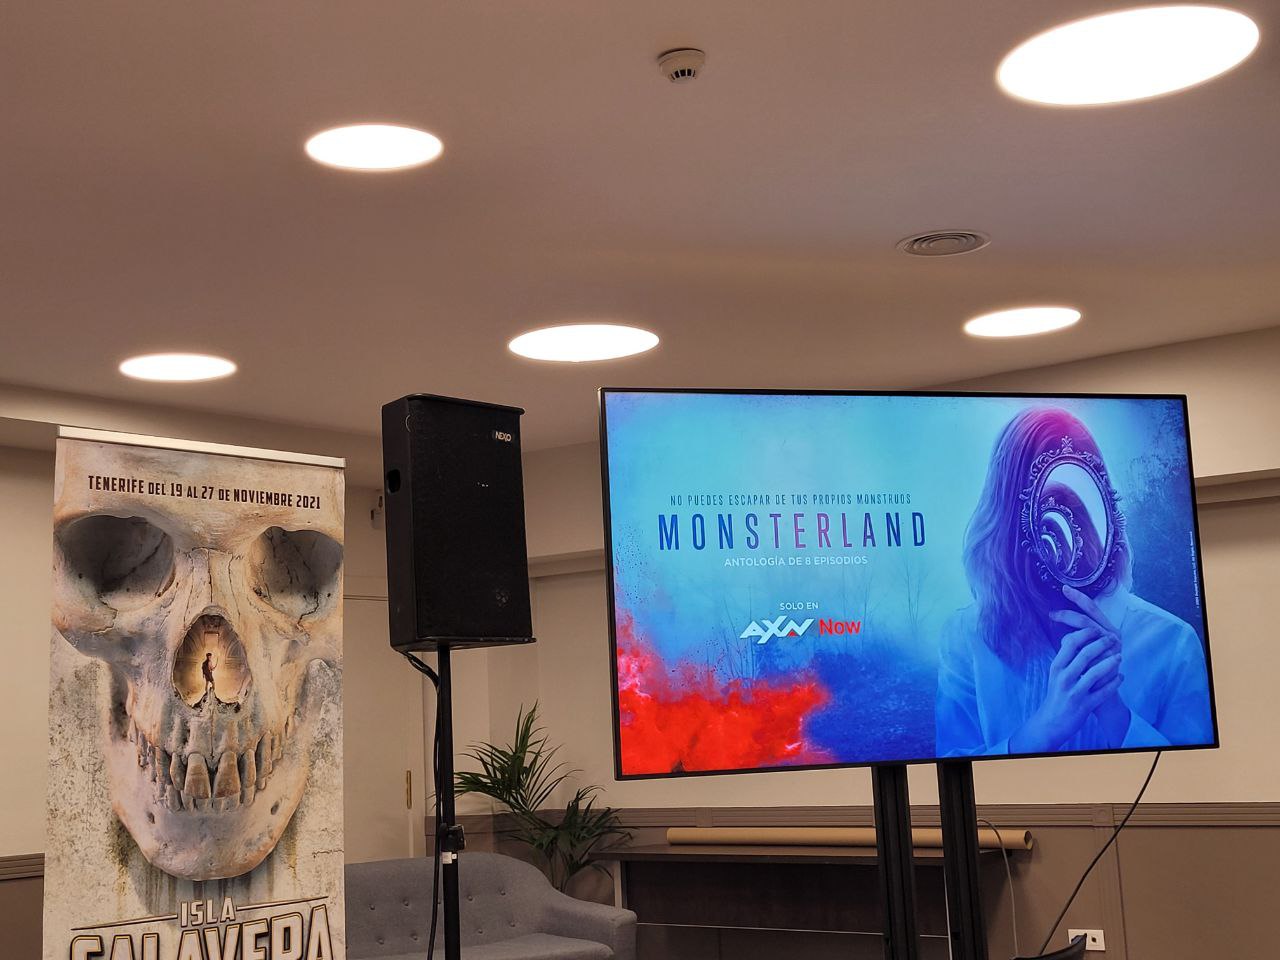 Los dos primeros episodios de la serie 'Monsterland' de AXN se podrán ver en Isla Calavera, por primera vez en pantalla grande en España.